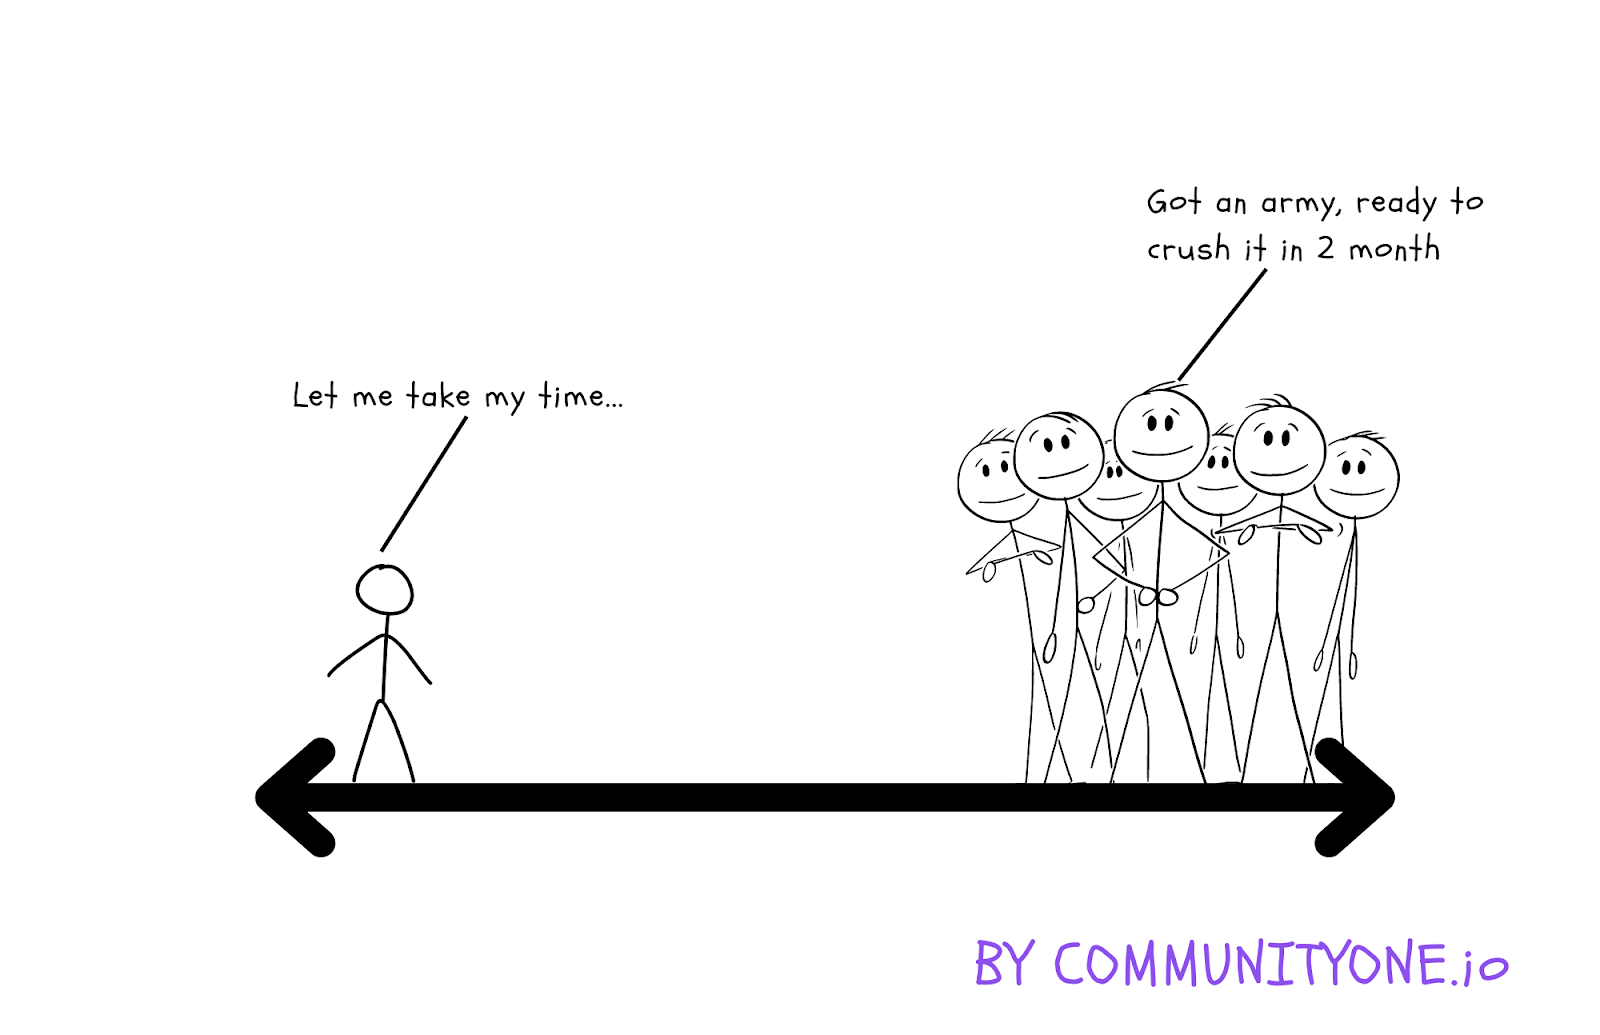 The Lean Community Management